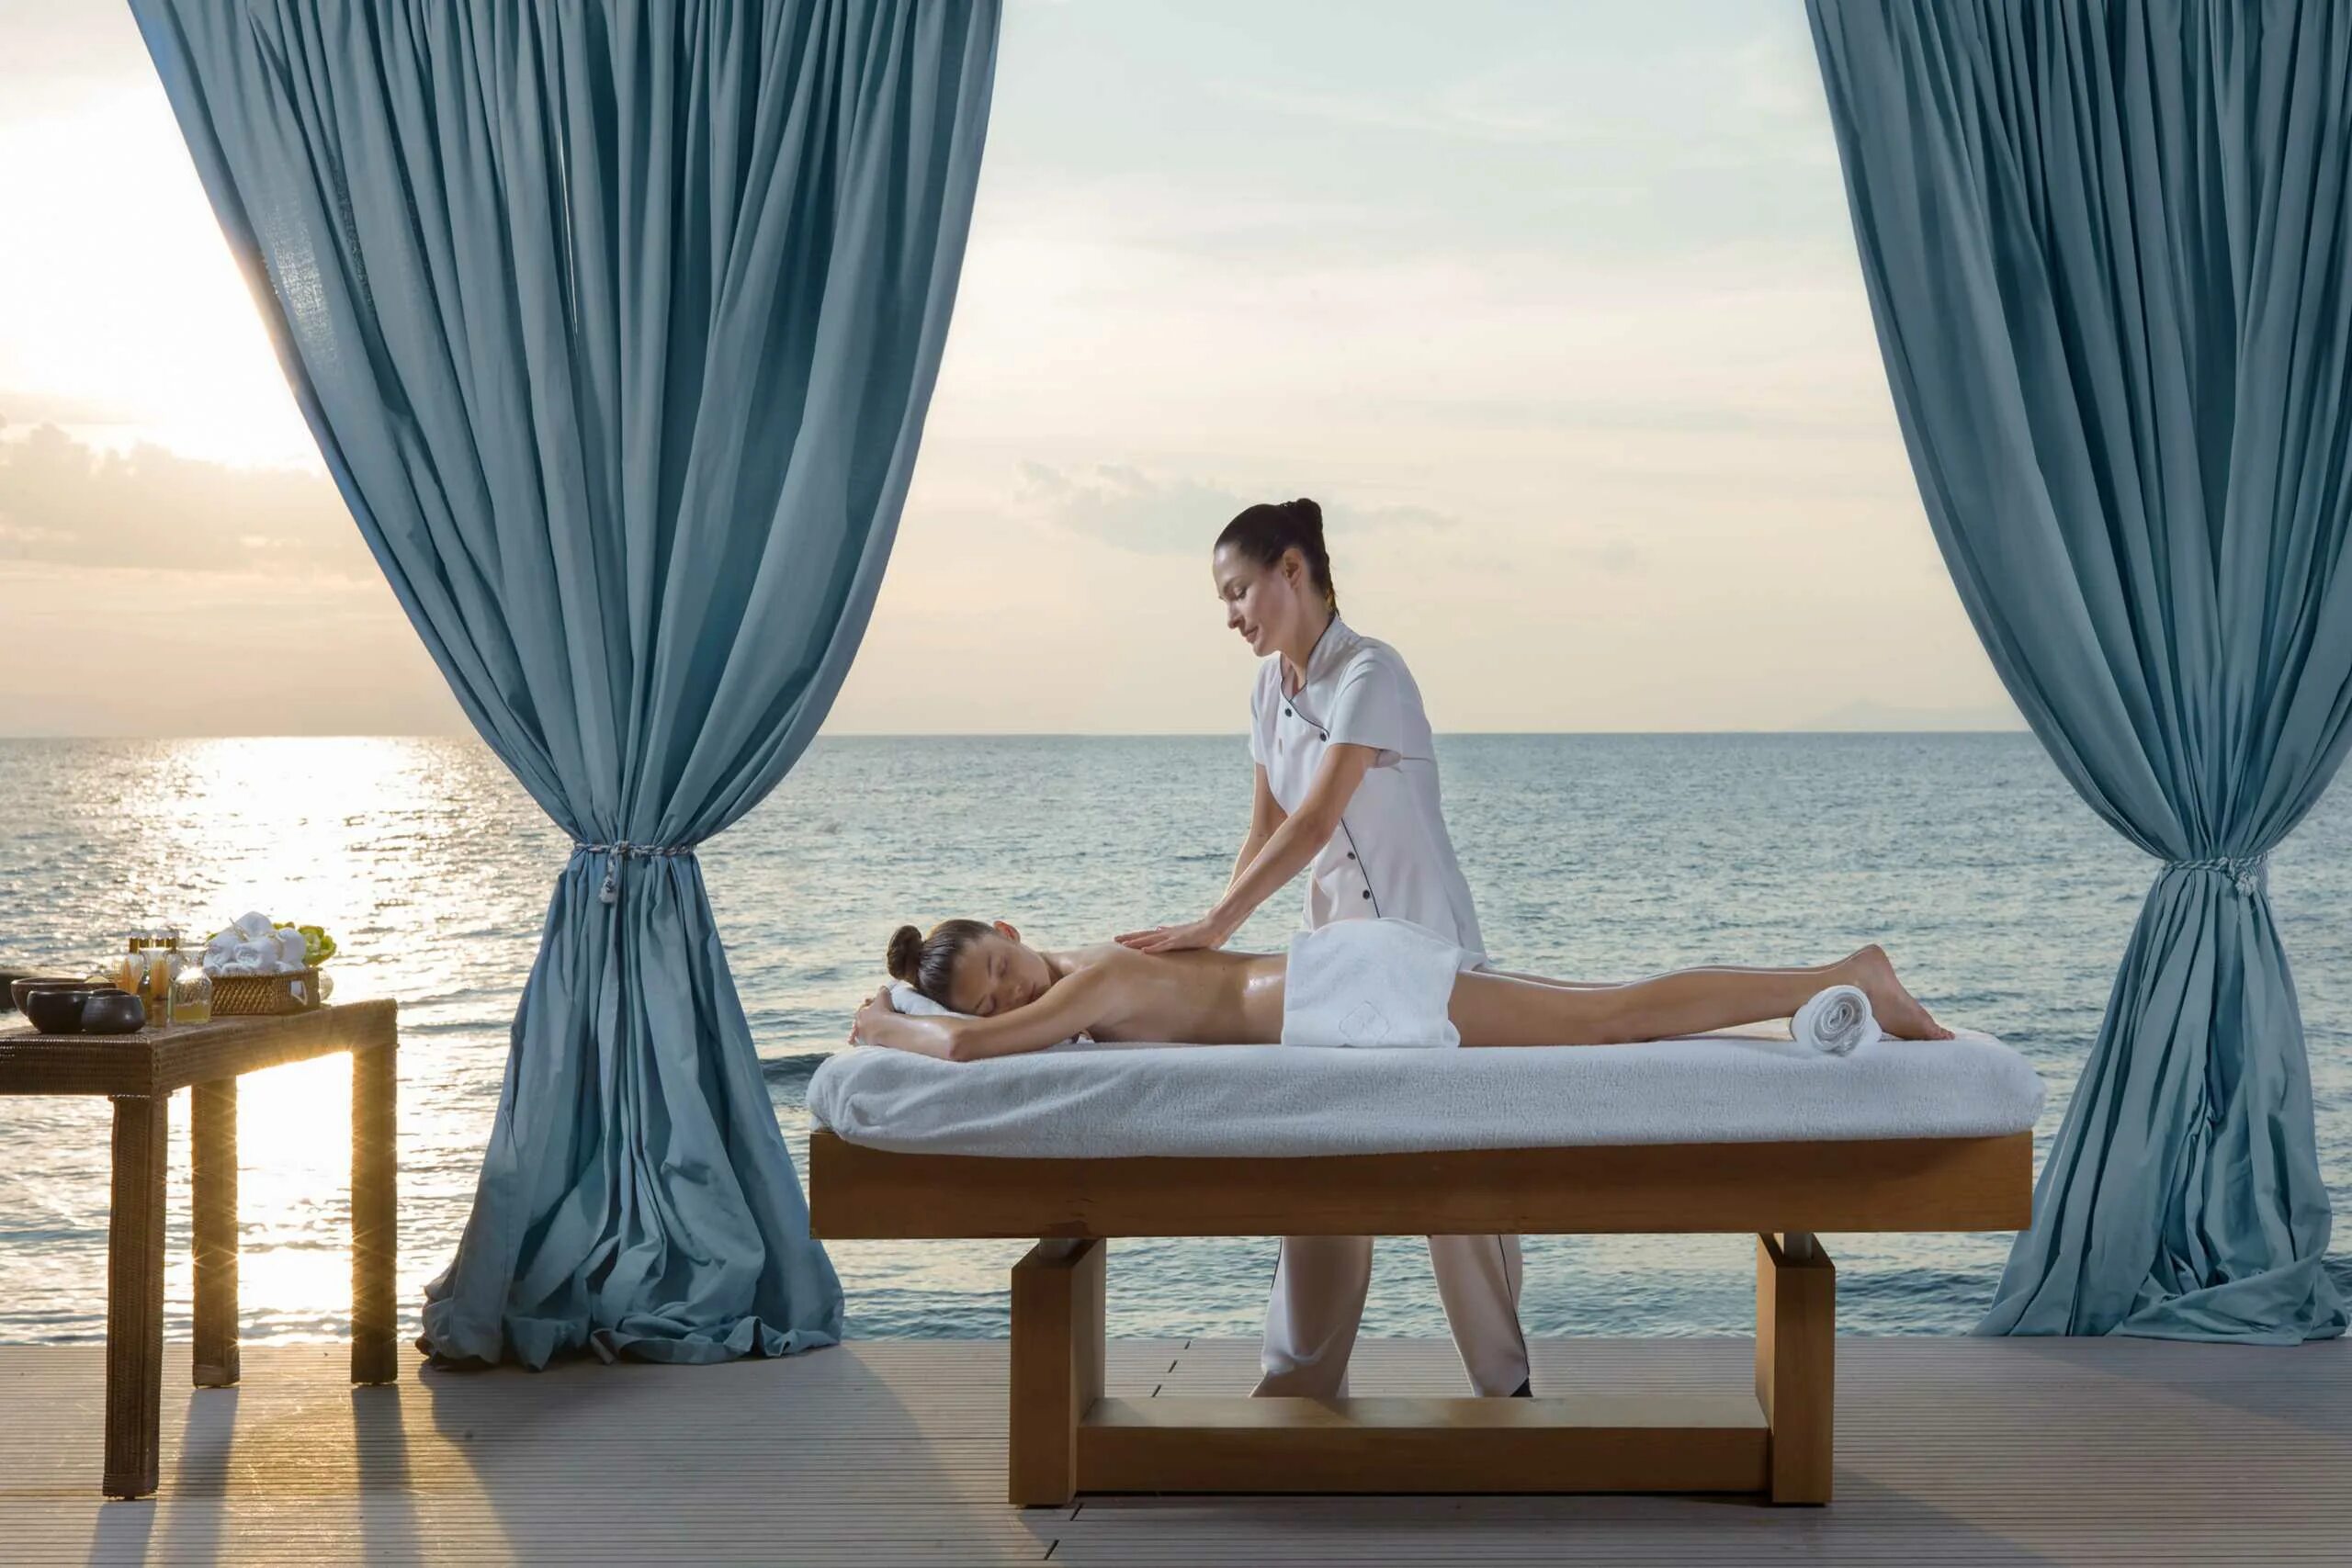 More massage. Тунис талассотерапия. Талассотерапия Греция. Массаж на берегу моря. Море спа.